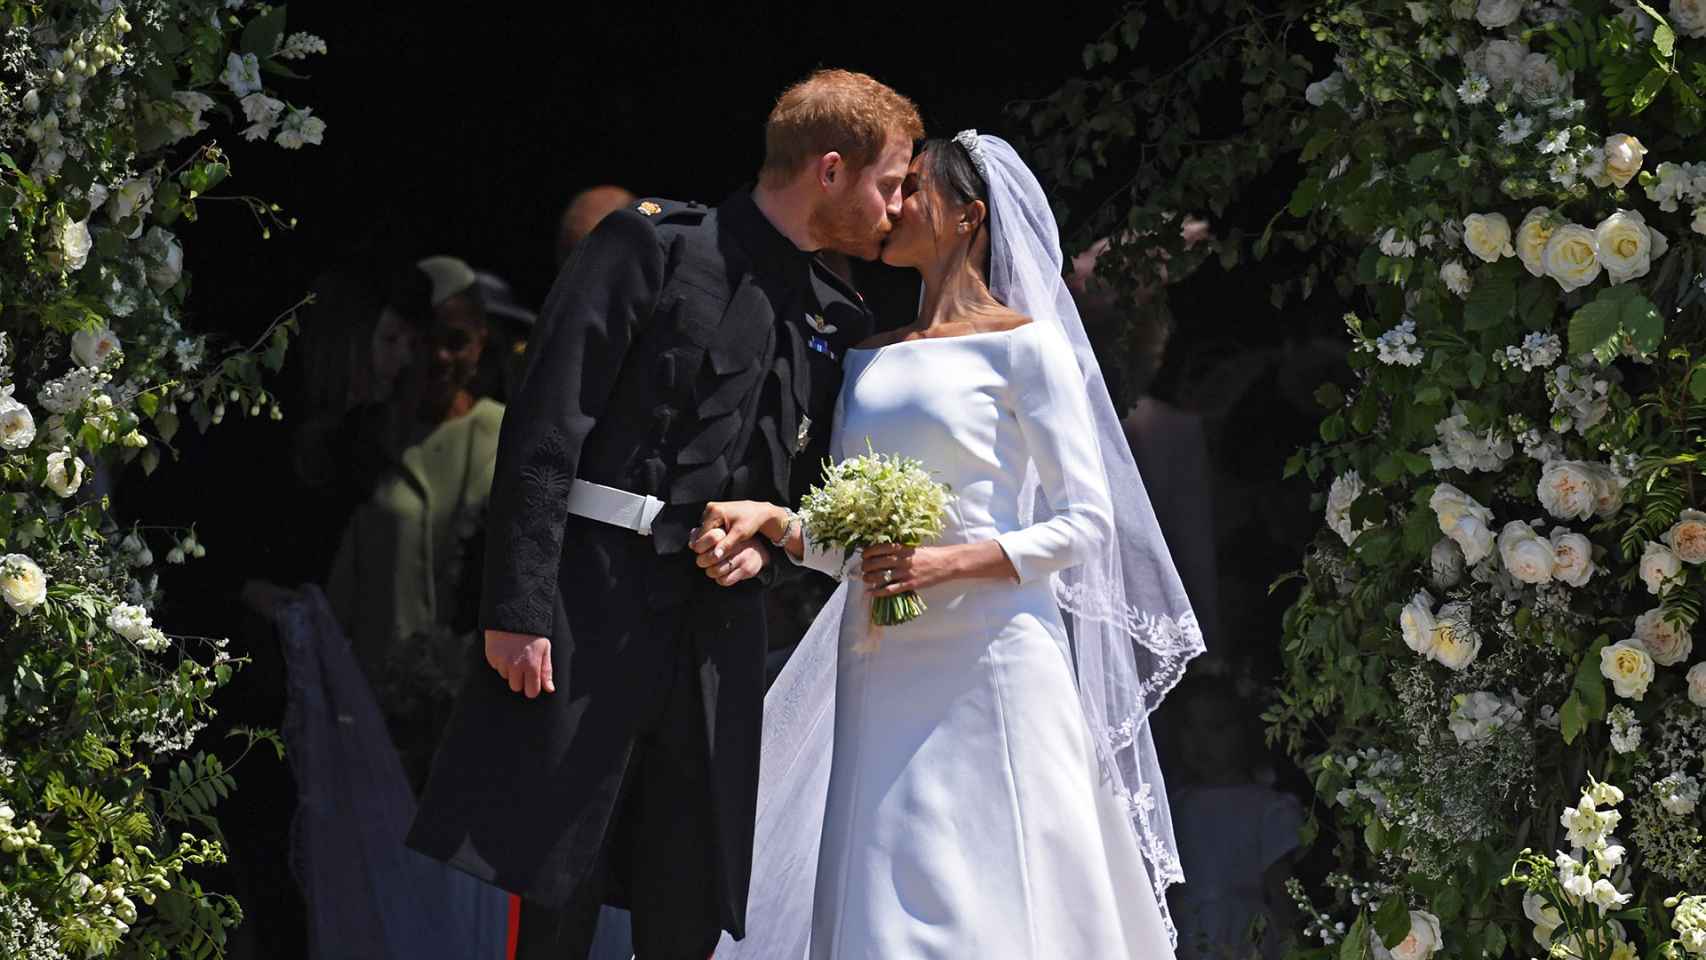 La boda fue de cuento de hadas en el castillo de Windsor.